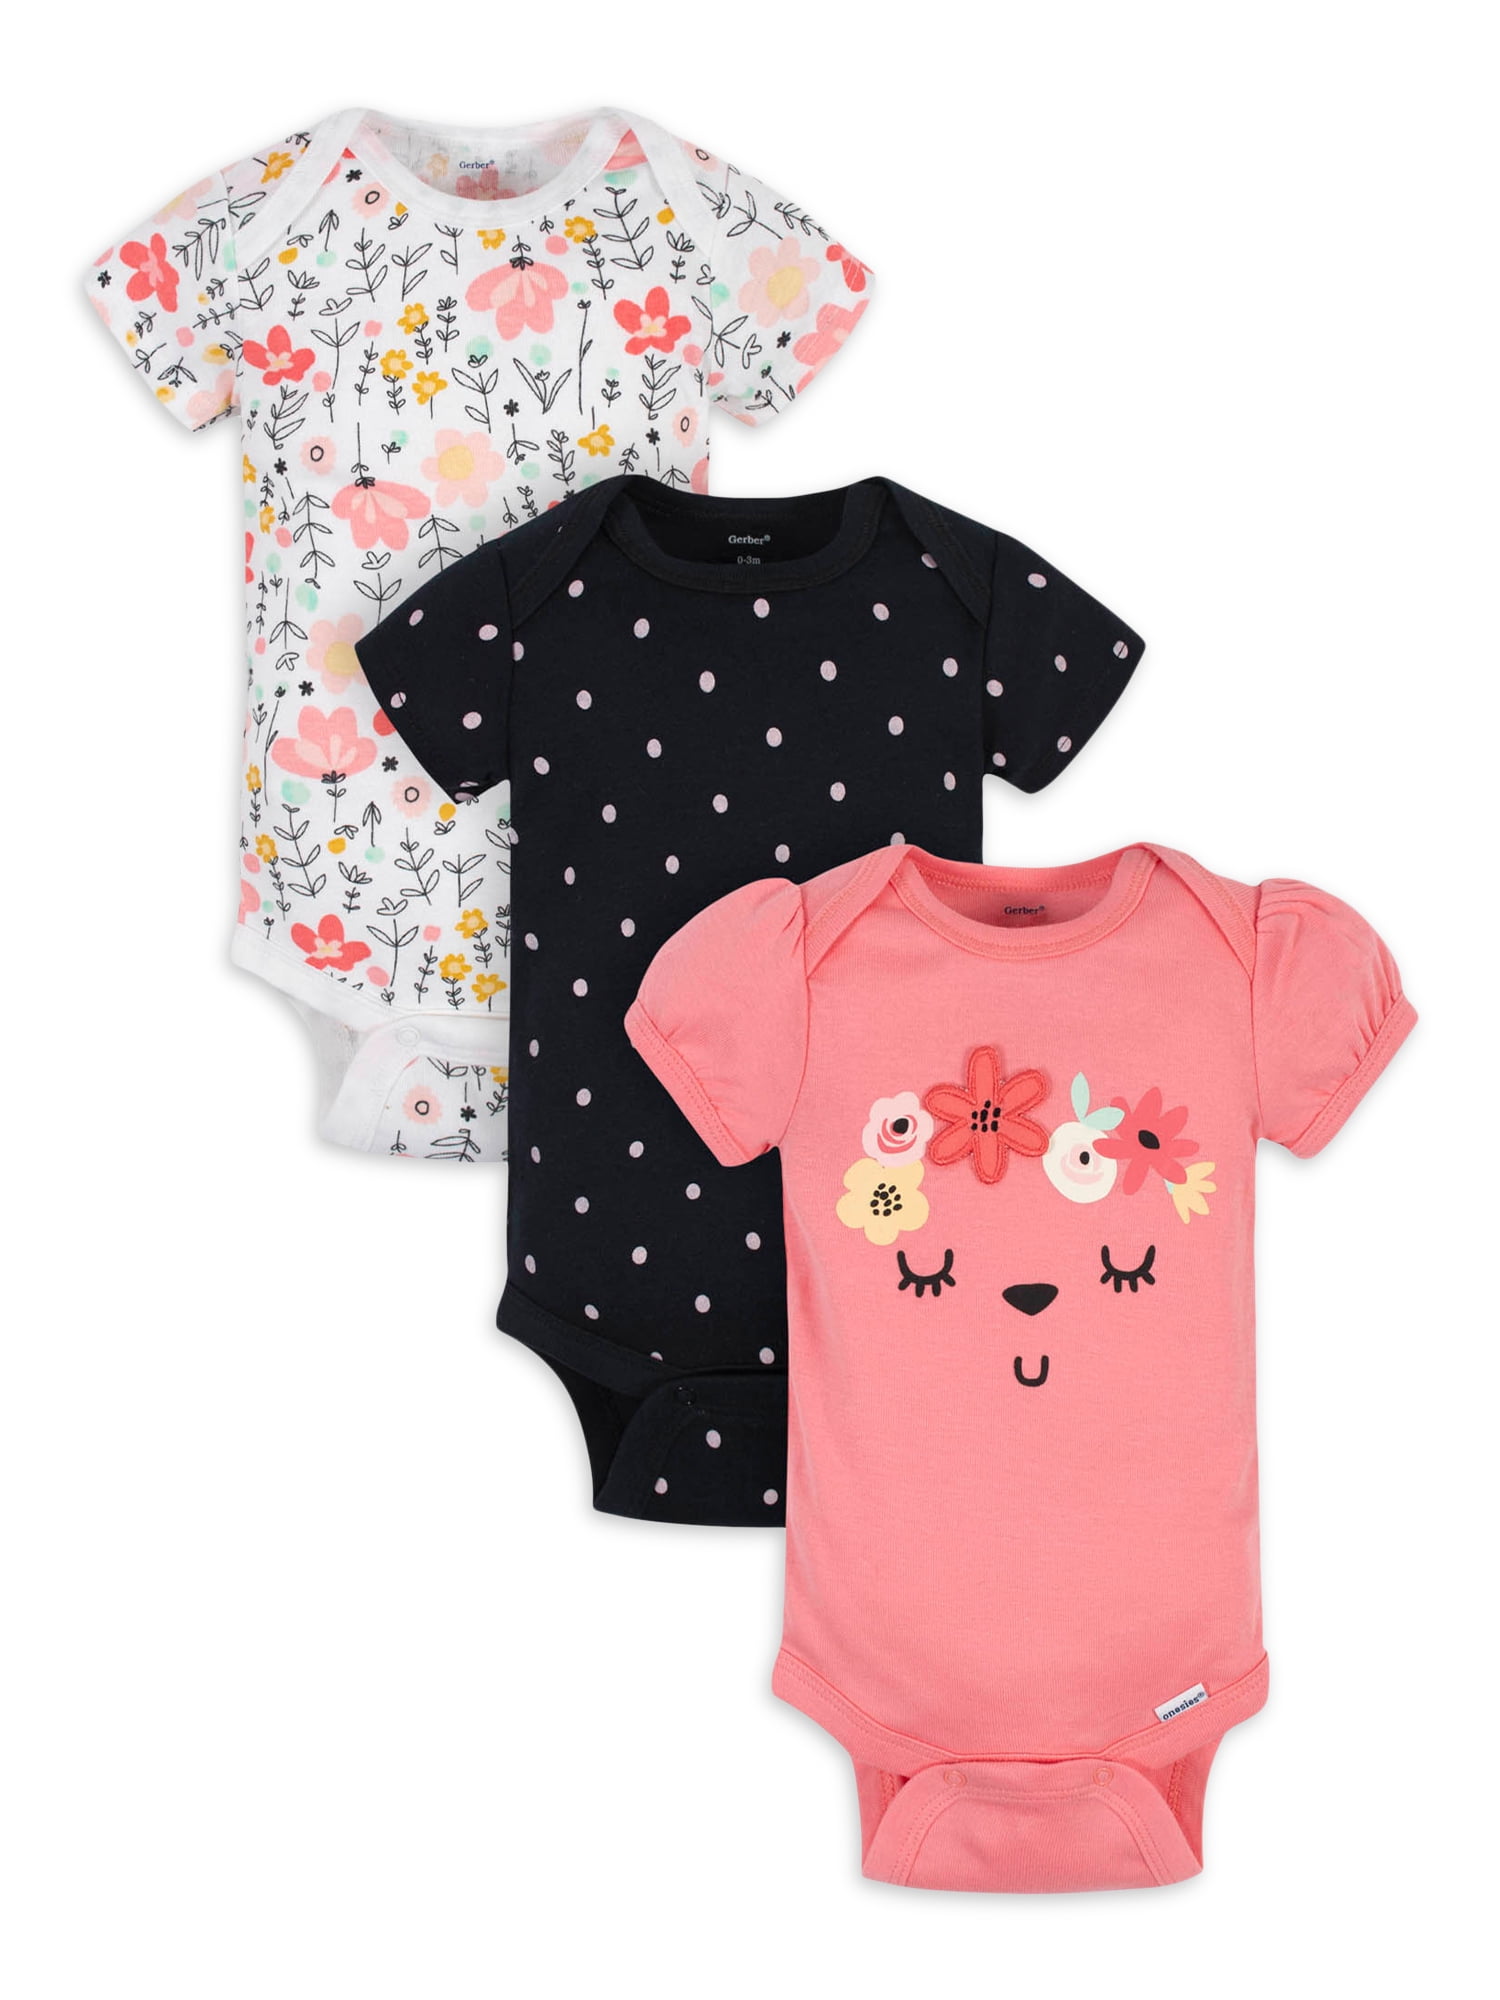 Check Mark Girl Baby Onesie Shirt Gender Reveal Gift Girls Infant Newborn Gerber 